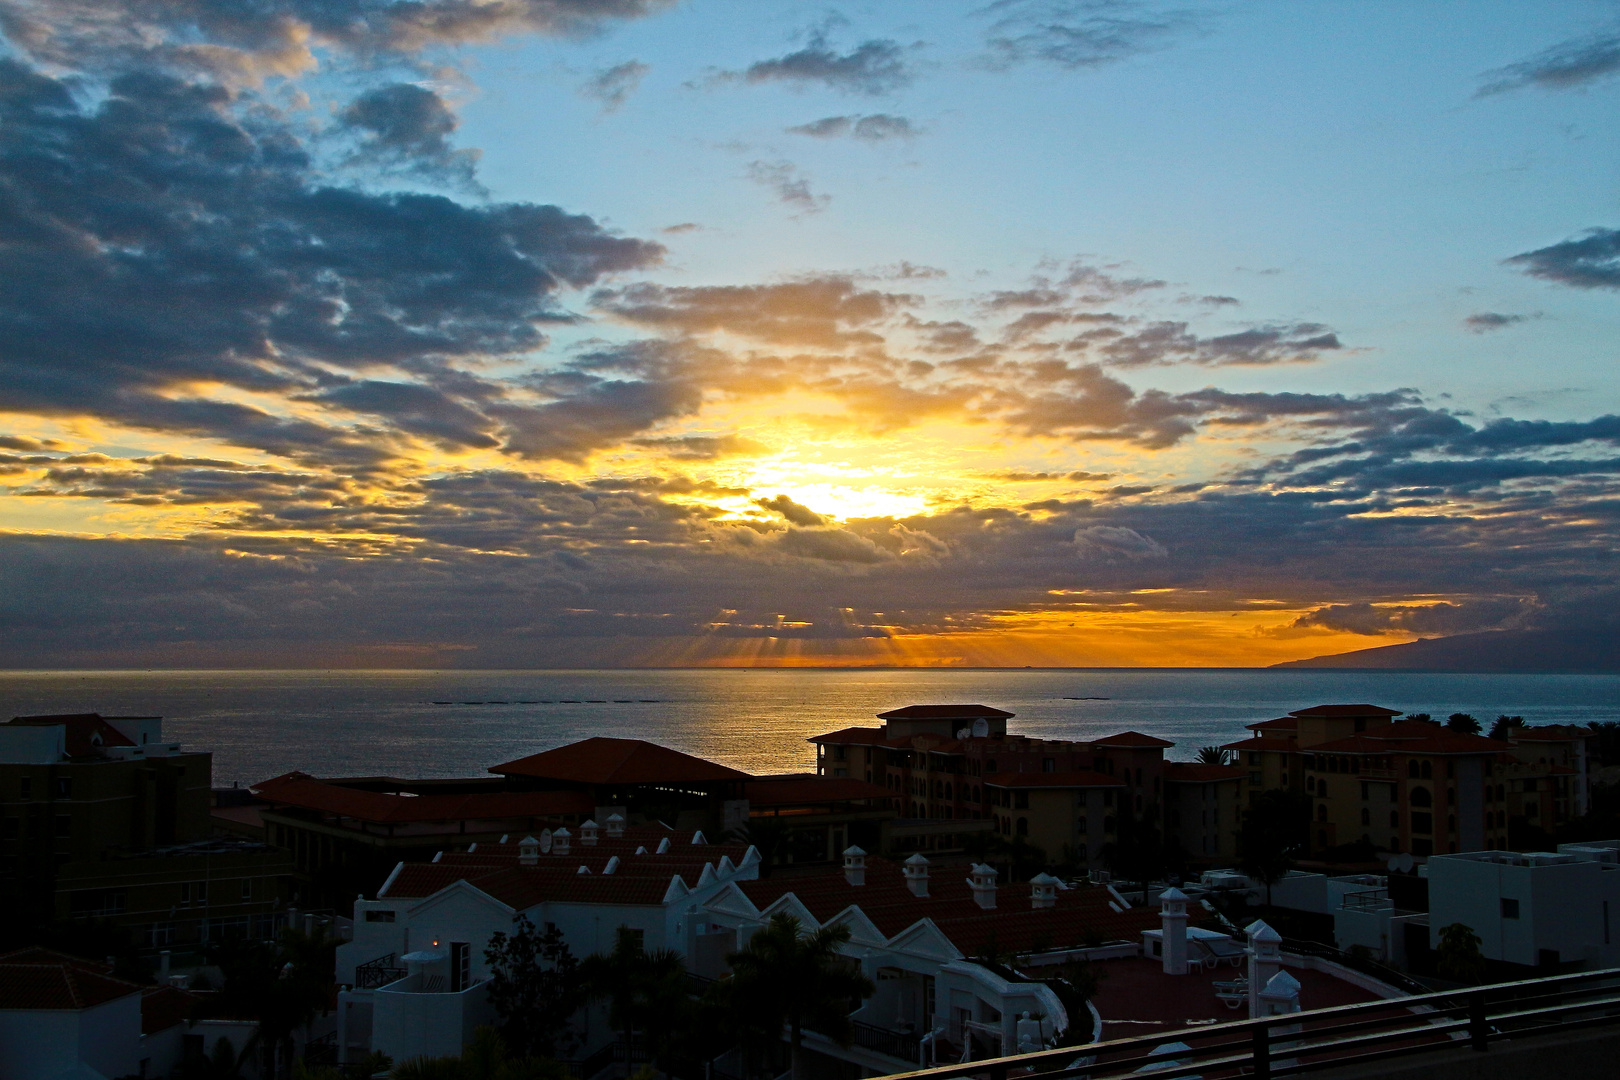 Sonnenuntergang auf Teneriffa, vom Hoteldach aus aufgenommen